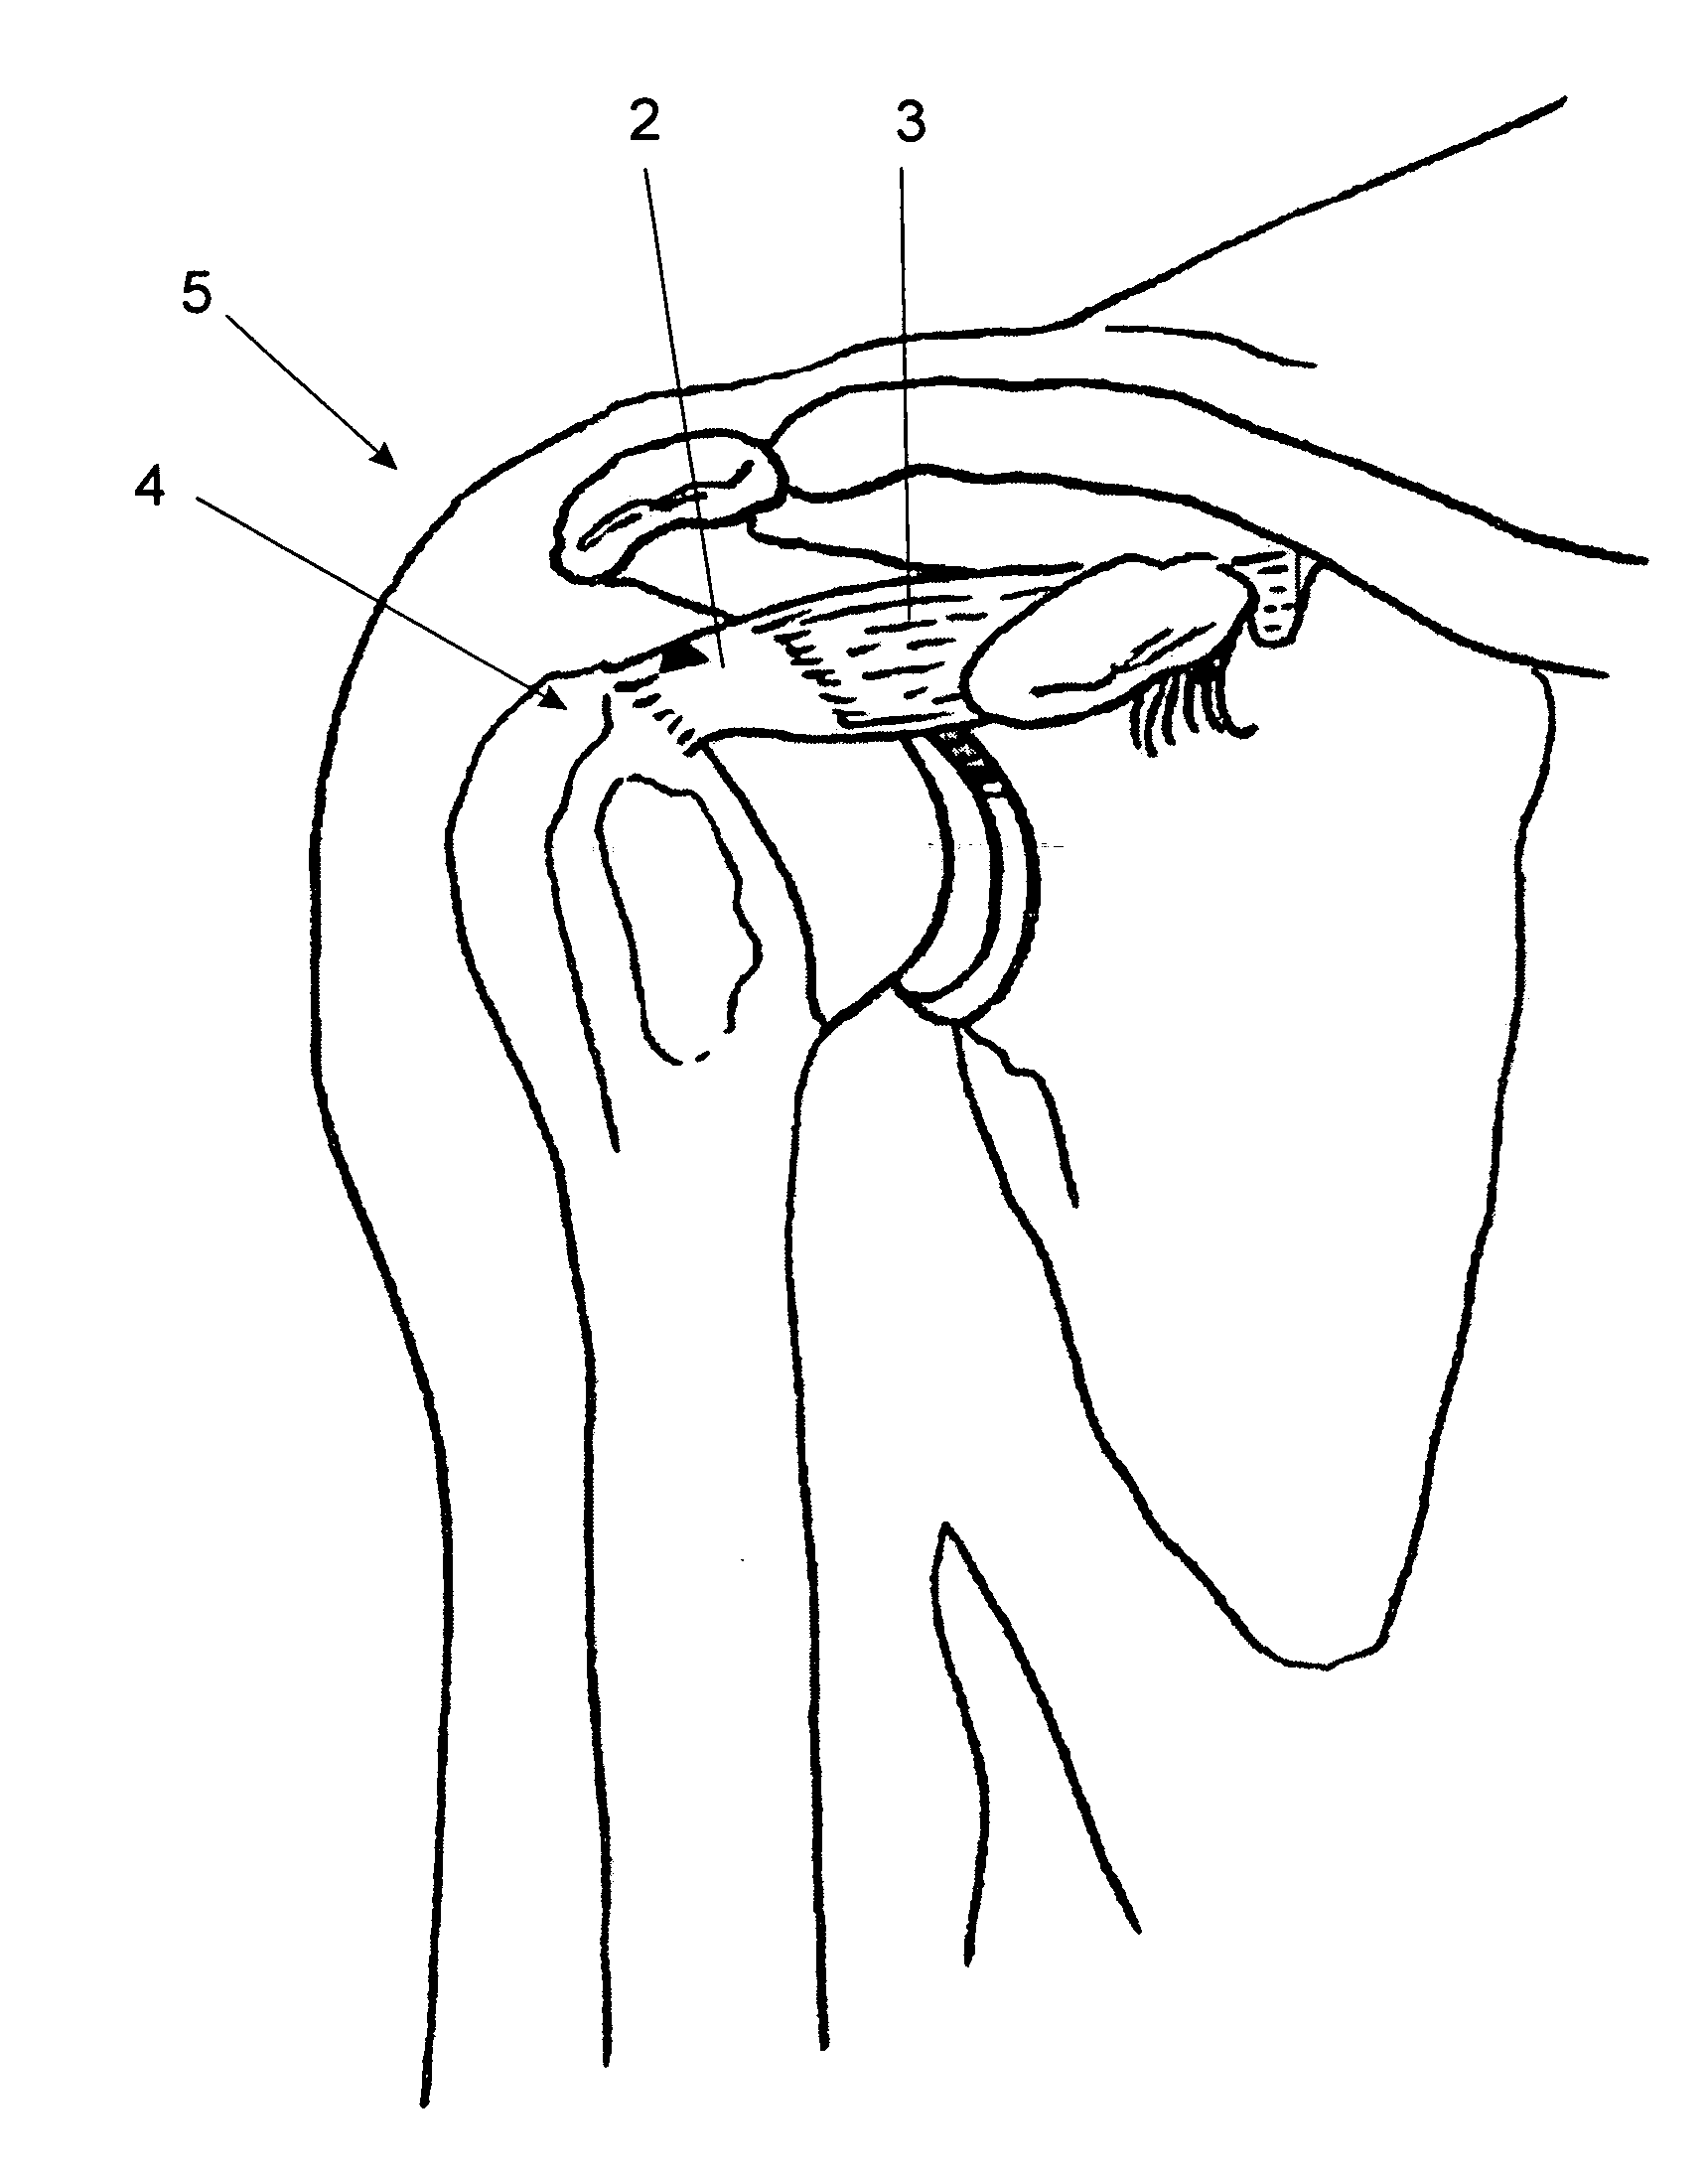 Method of repairing tendons by surgery